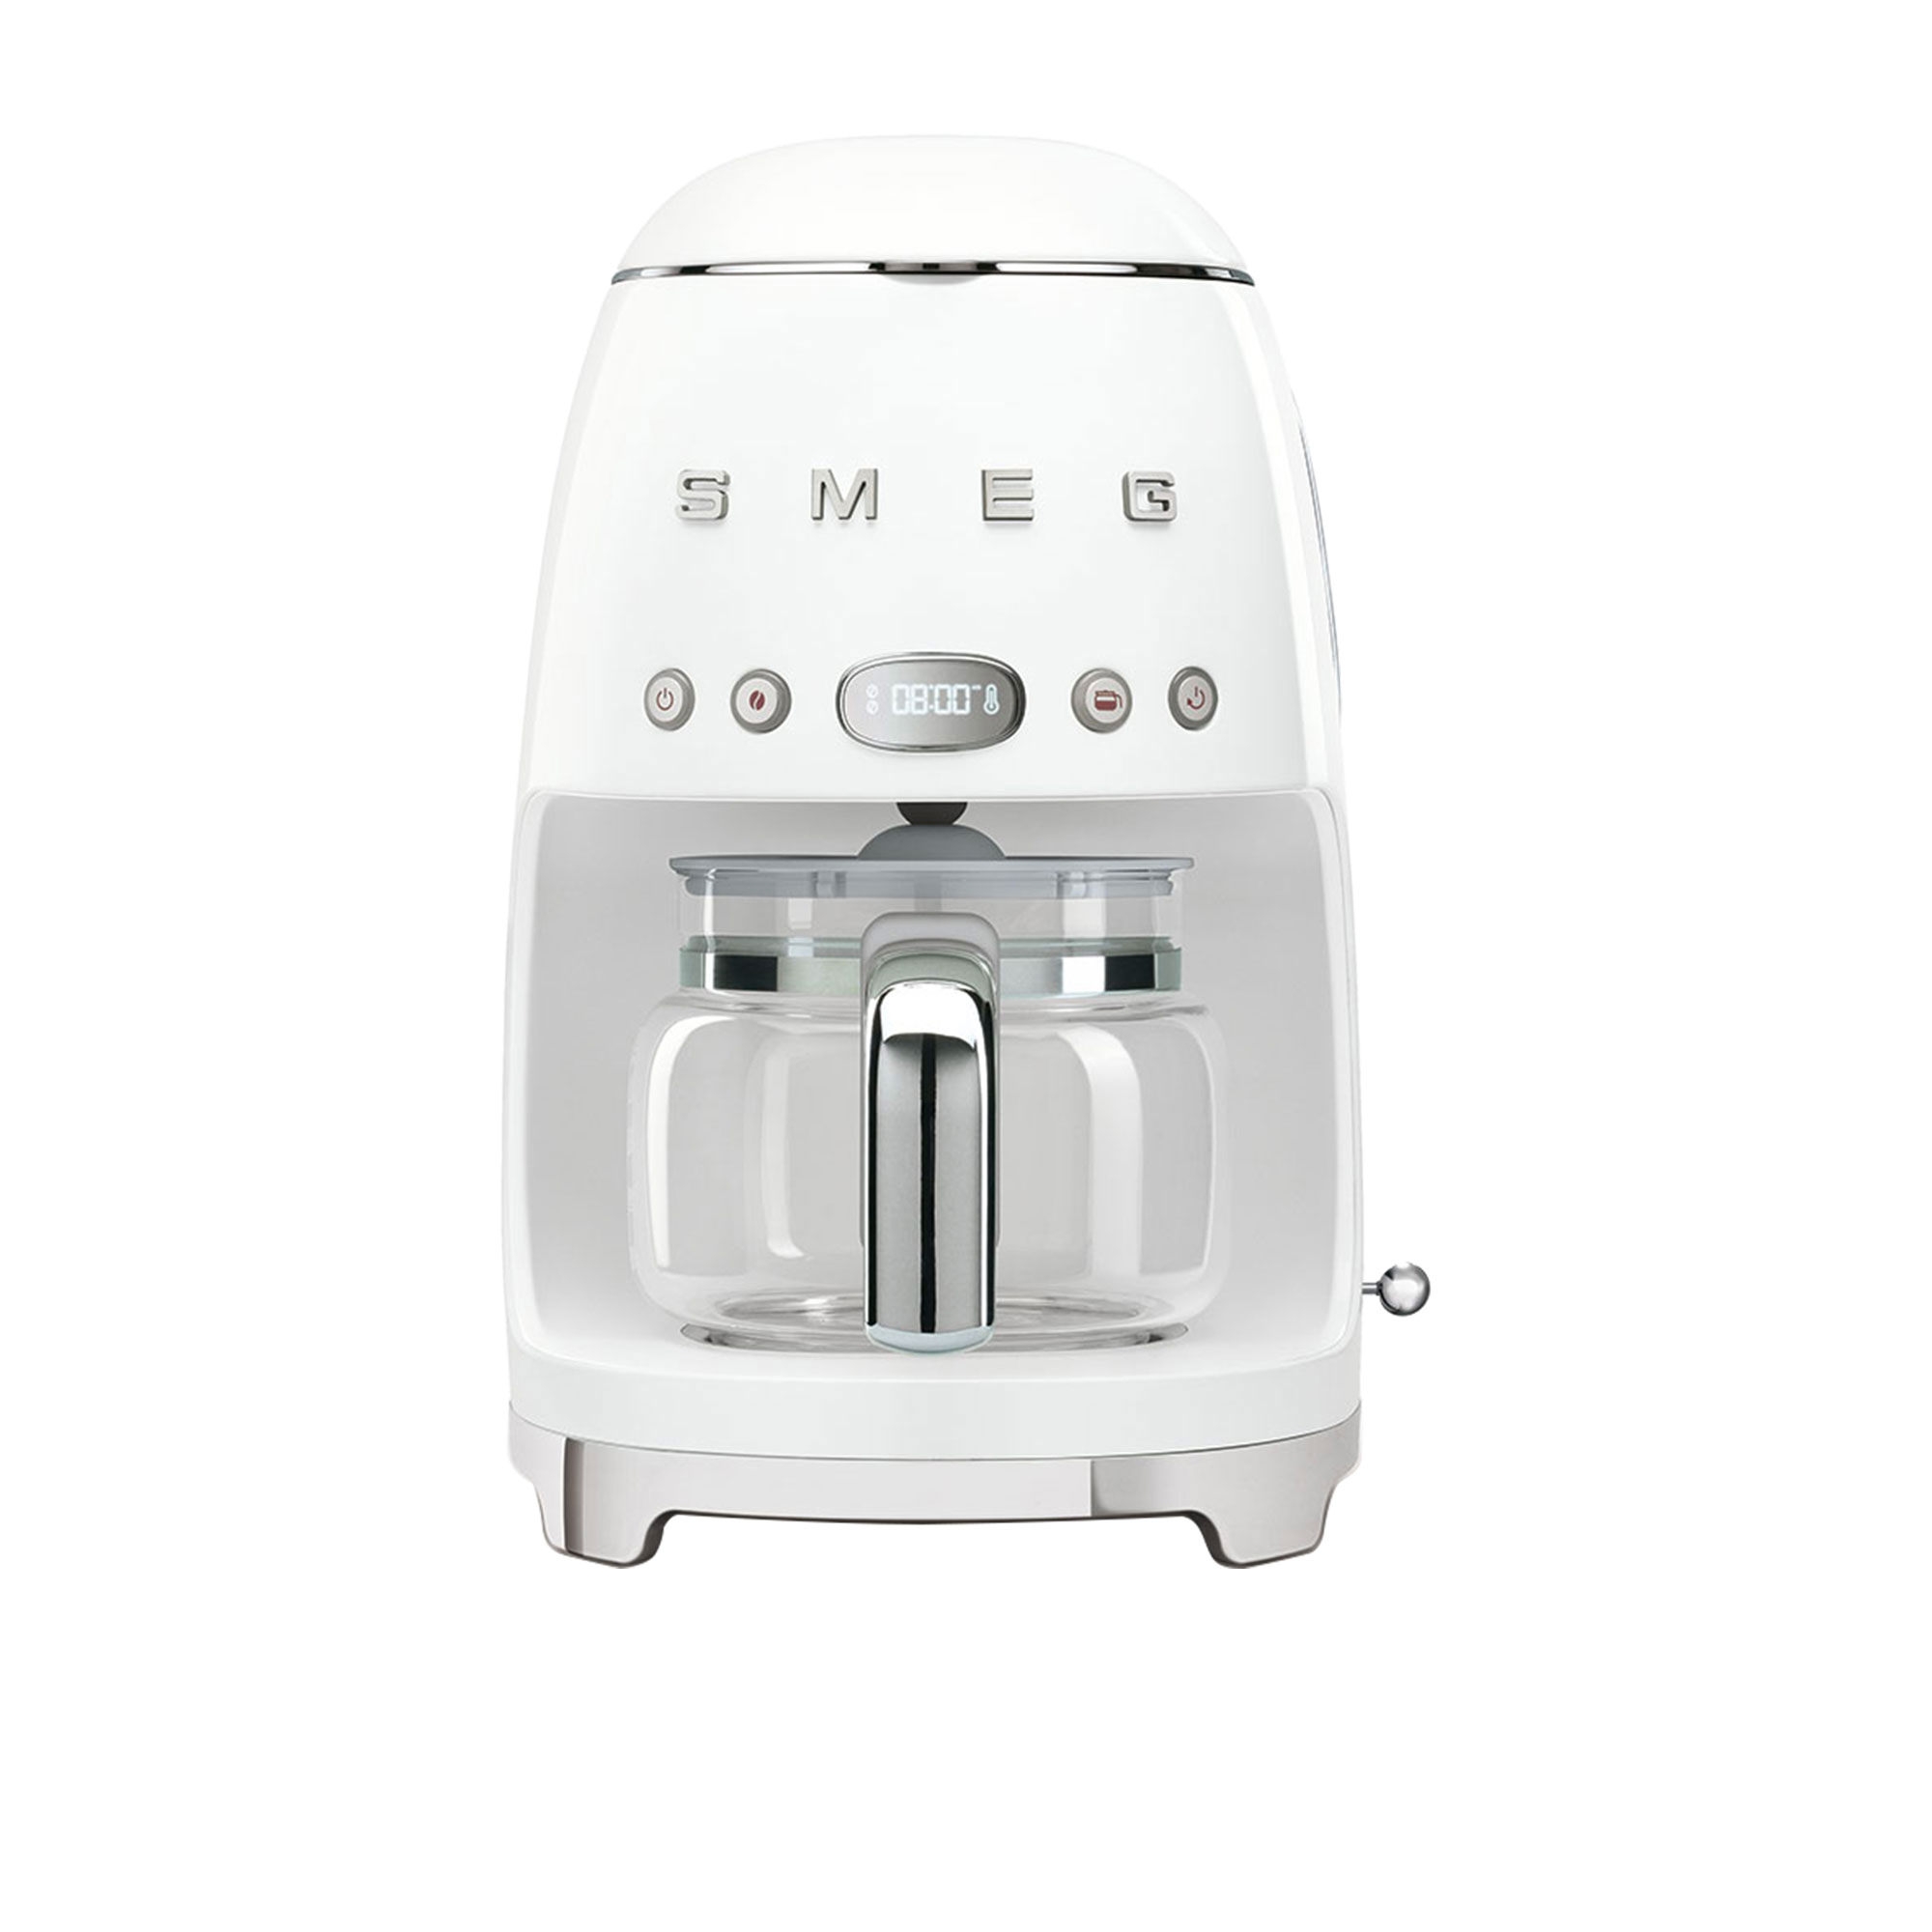 Smeg 50's Retro Style Drip Filter Coffee Machine White Image 1